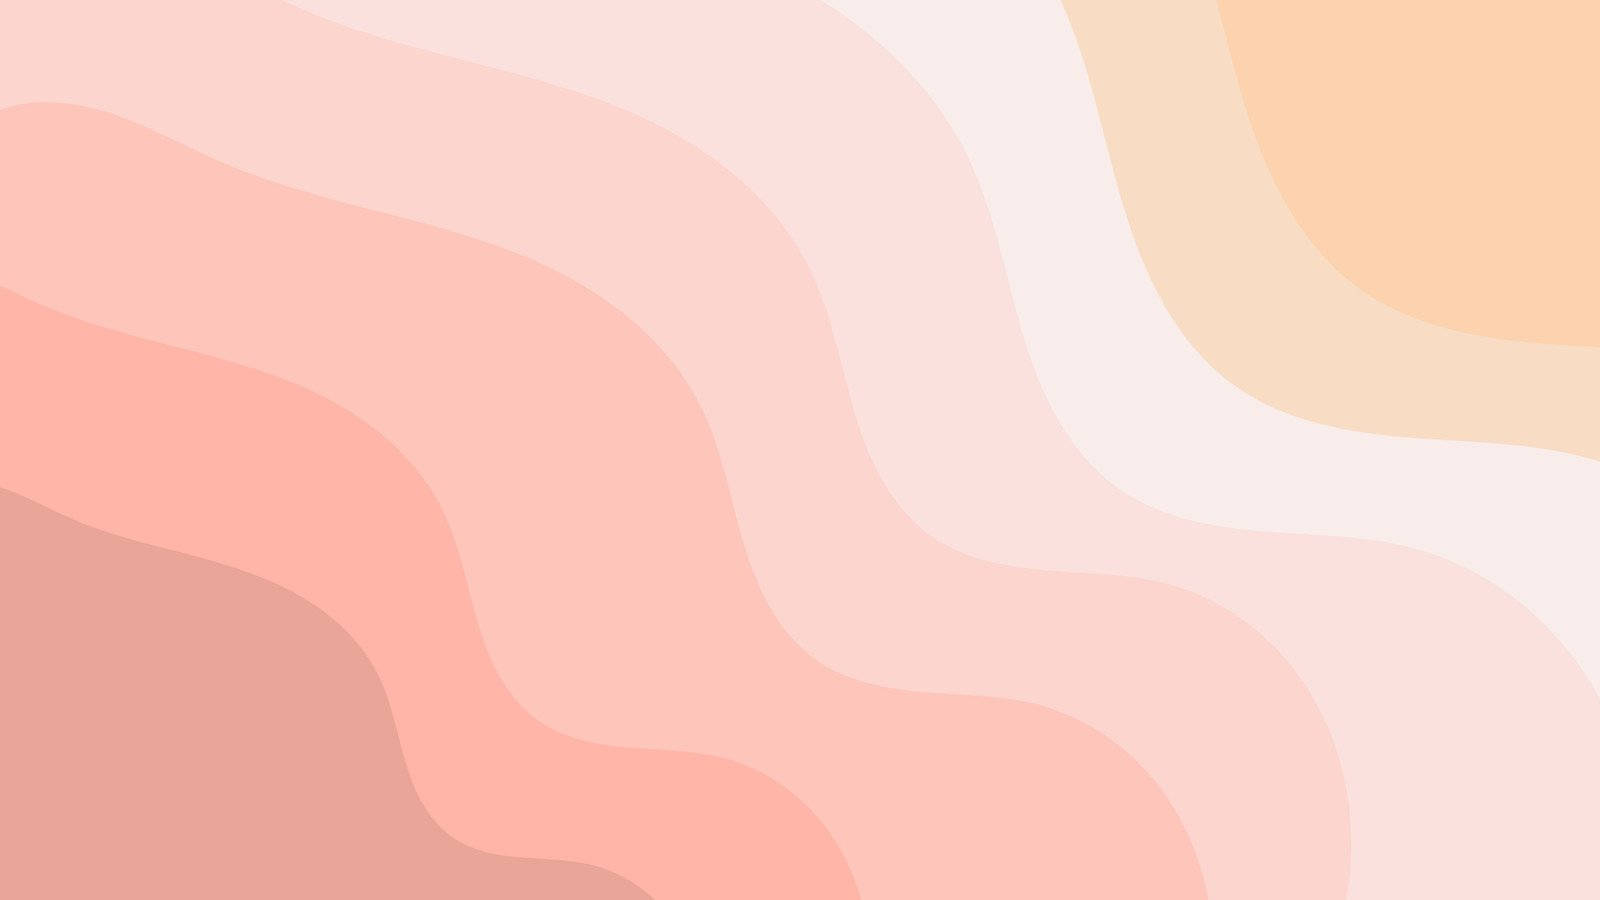 Aesthetic Minimalist Pink Waves